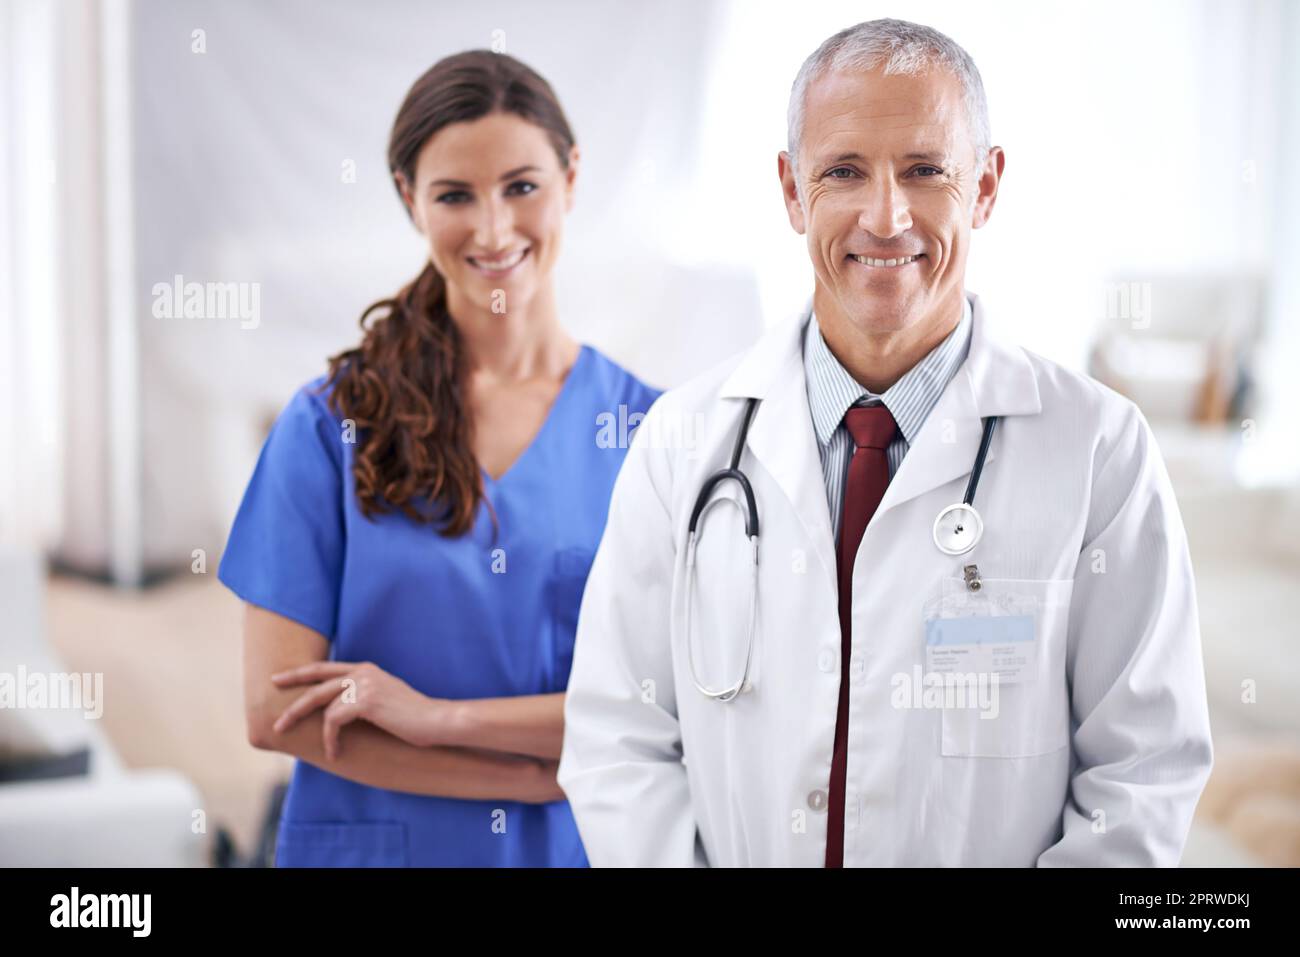 Votre équipe chirurgicale spécialisée. Portrait de deux professionnels de la santé amicaux. Banque D'Images